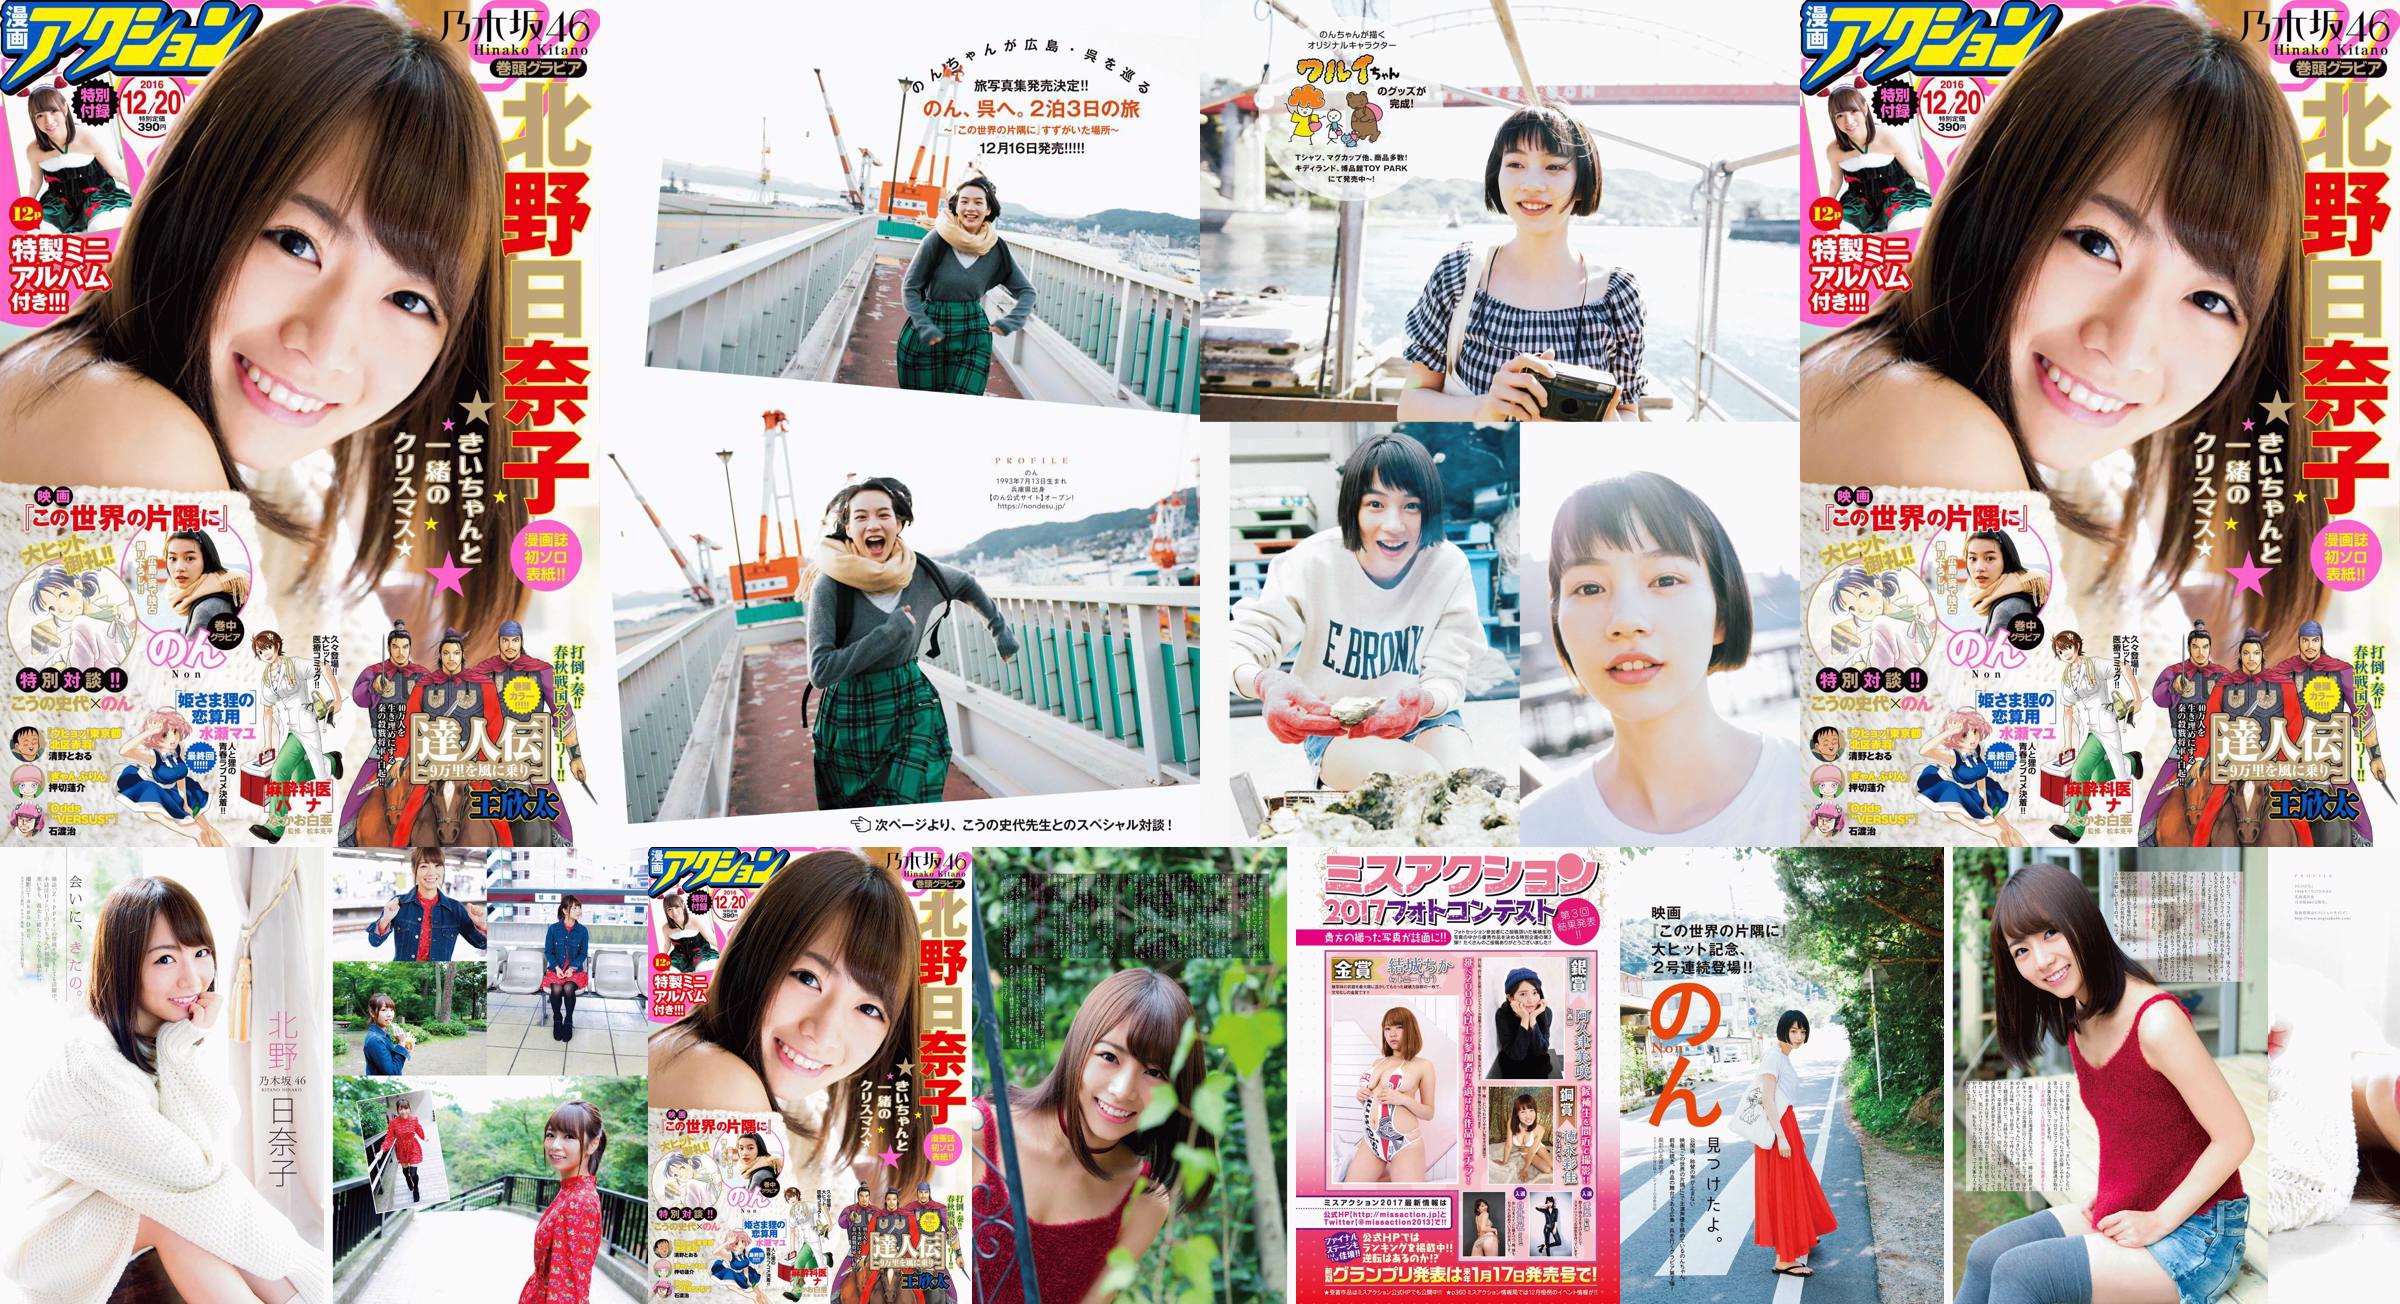 [Manga Action] Kitano Hinako のん 2016 No.24 Photo Magazine No.7bf315 Page 1